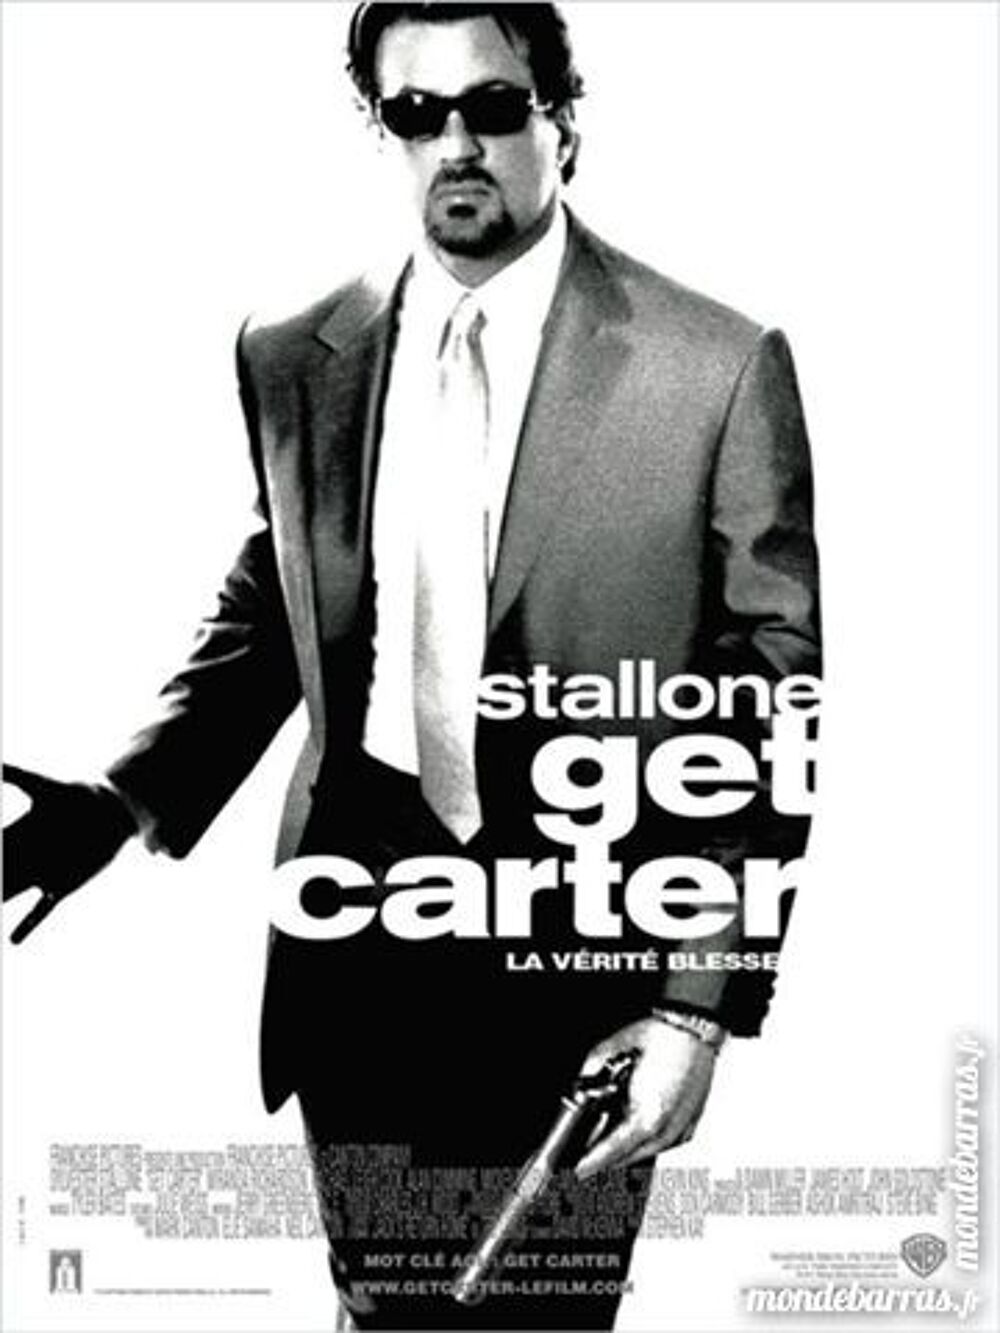 K7 Vhs: Get Carter (349) DVD et blu-ray